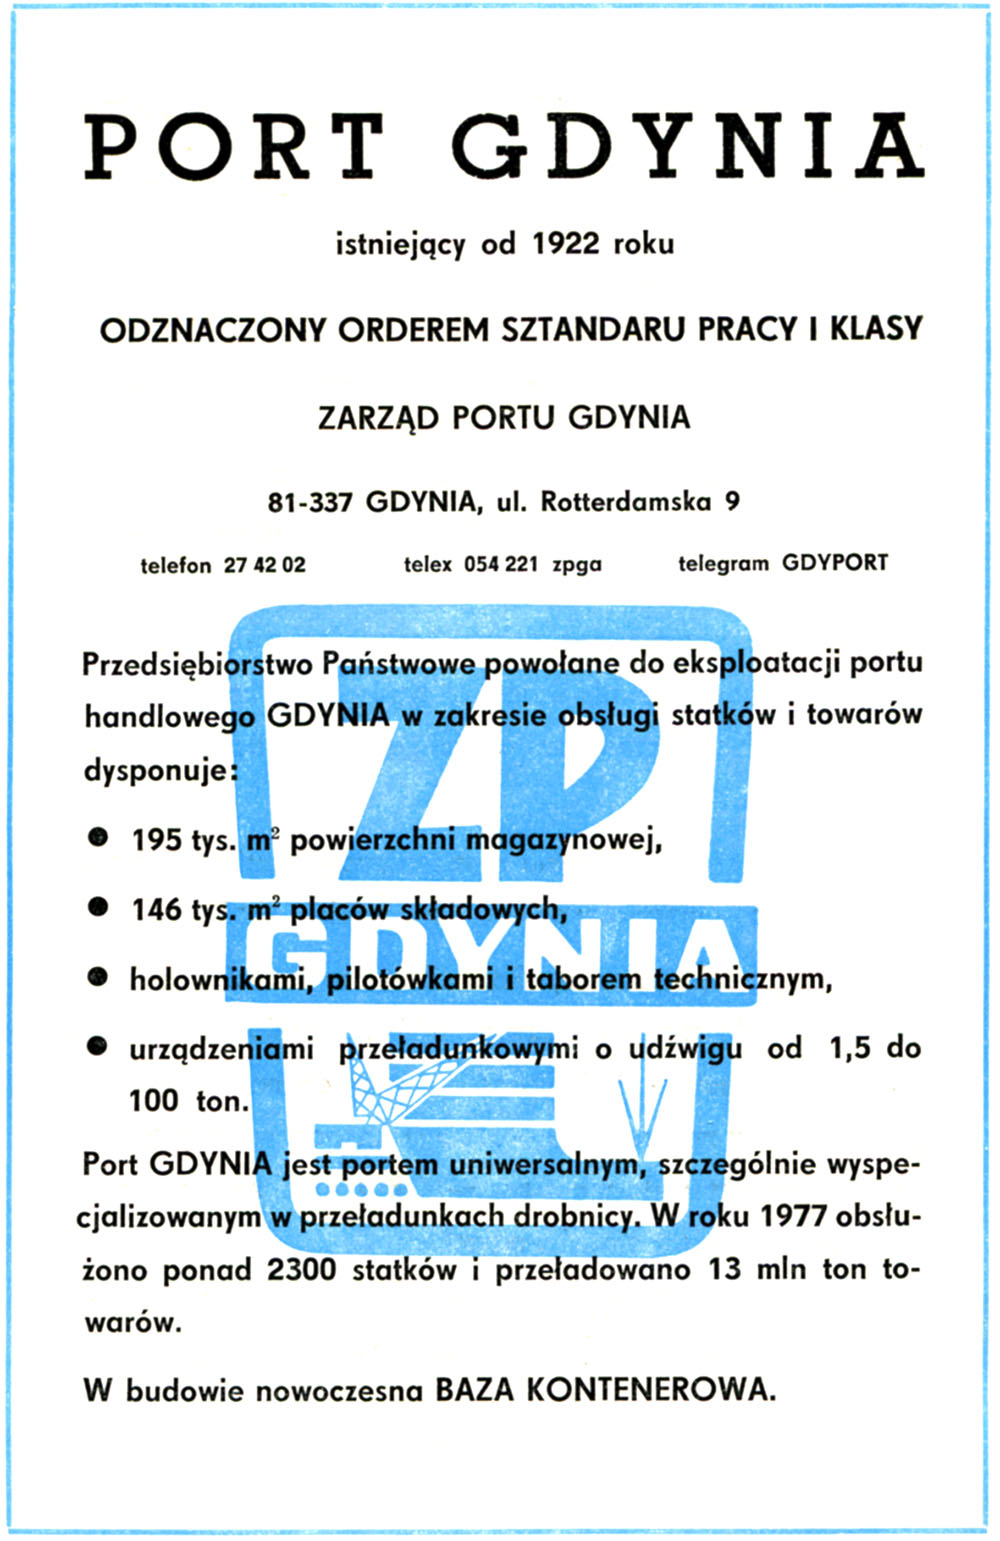 PORT GDYNIA istniejący od 1922 roku Odznaczony Orderem Sztandaru Pracy I Klasy Zarząd Portu Gdynia